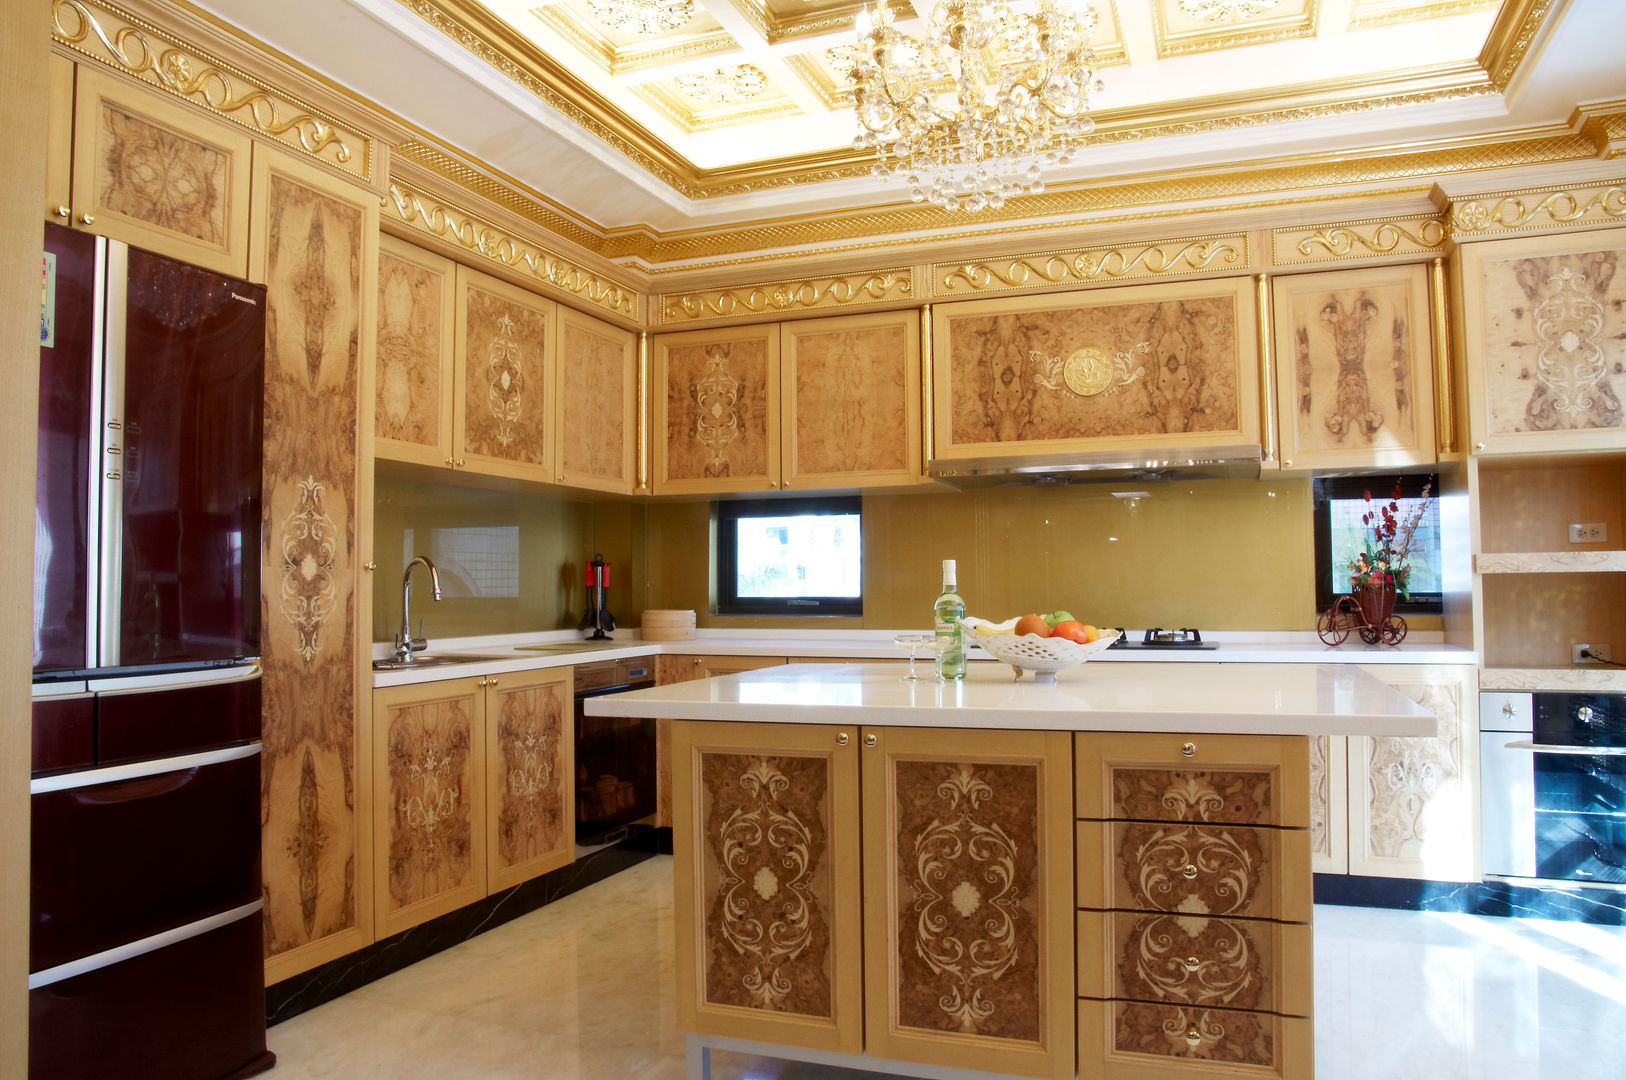 歐式古典建築及室內設計家具配置, 傑德空間設計有限公司 傑德空間設計有限公司 Kitchen Chipboard